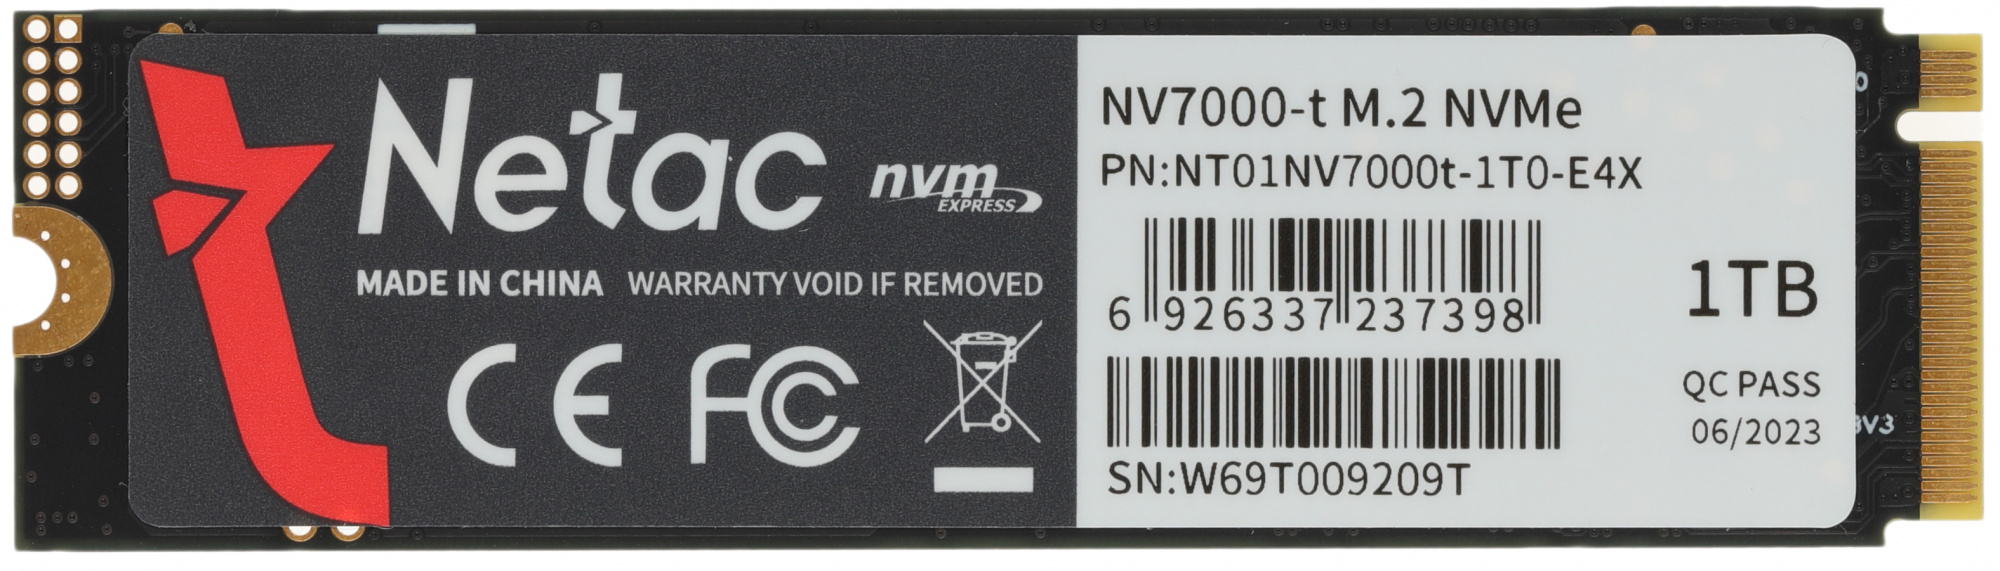 SSD  NETAC NV7000-t NT01NV7000t-1T0-E4X 1, M.2 2280, PCIe 4.0 x4,  NVMe,  M.2